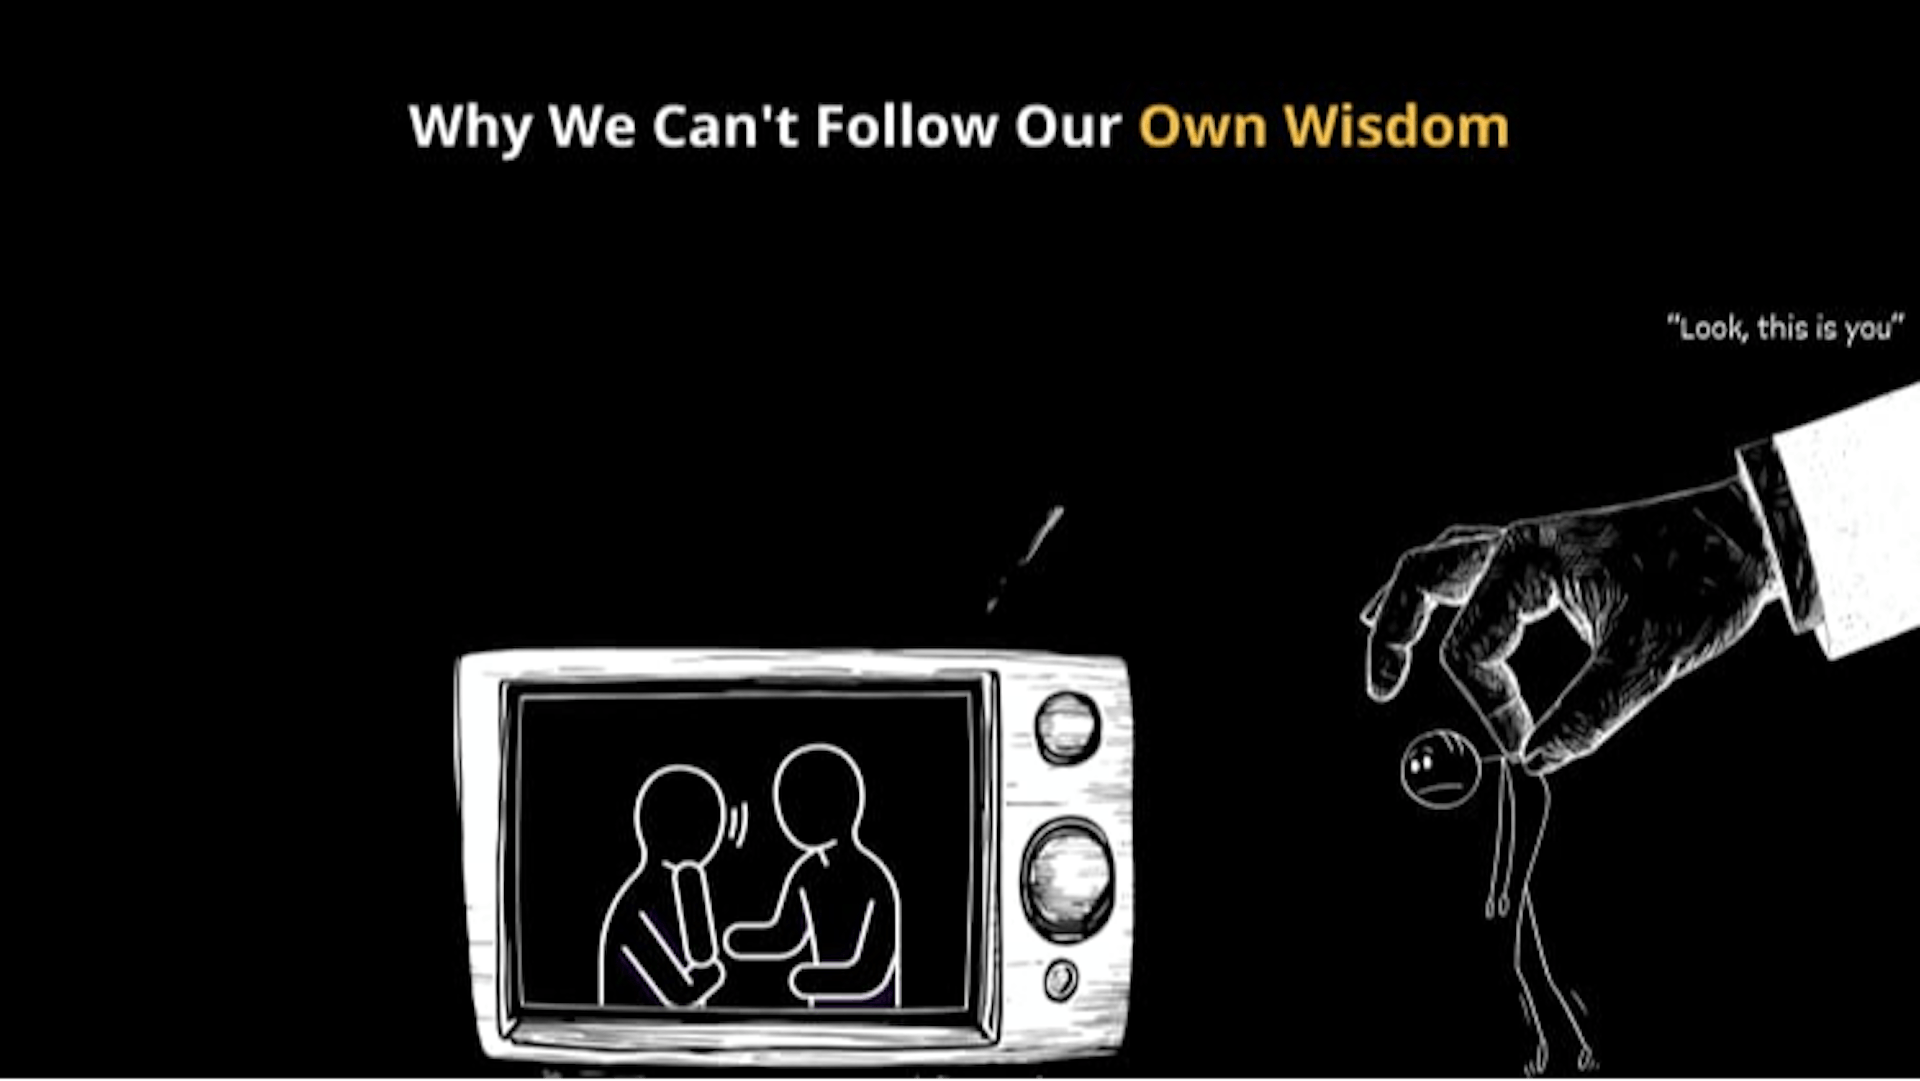 featured image - La paradoja del consejo: por qué no podemos seguir nuestra propia sabiduría